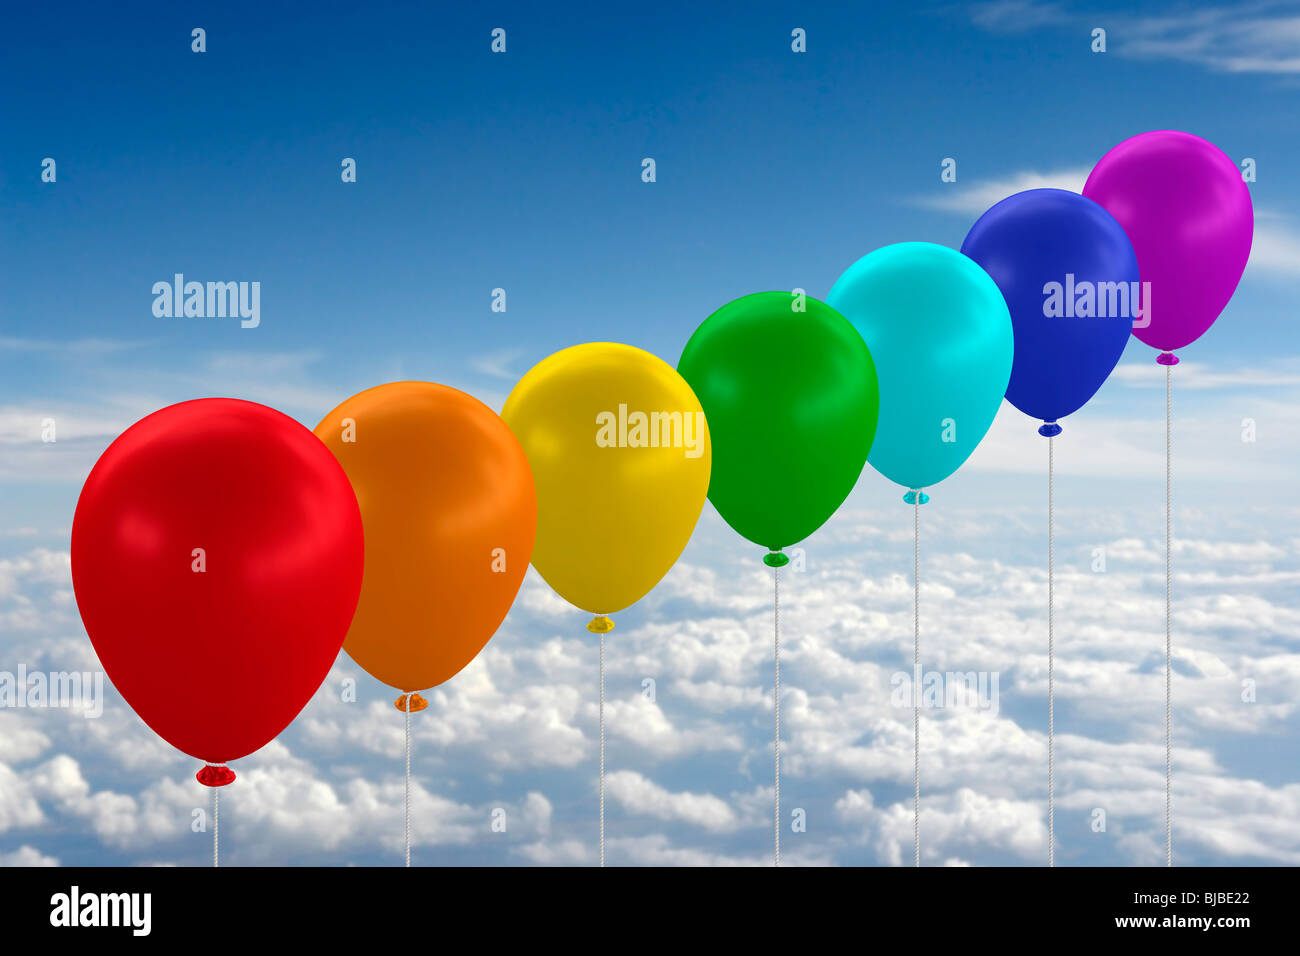 Ballons in Regenbogenfarben gegen blauen Himmel mit Wolken. Digital zu komponieren. Stockfoto